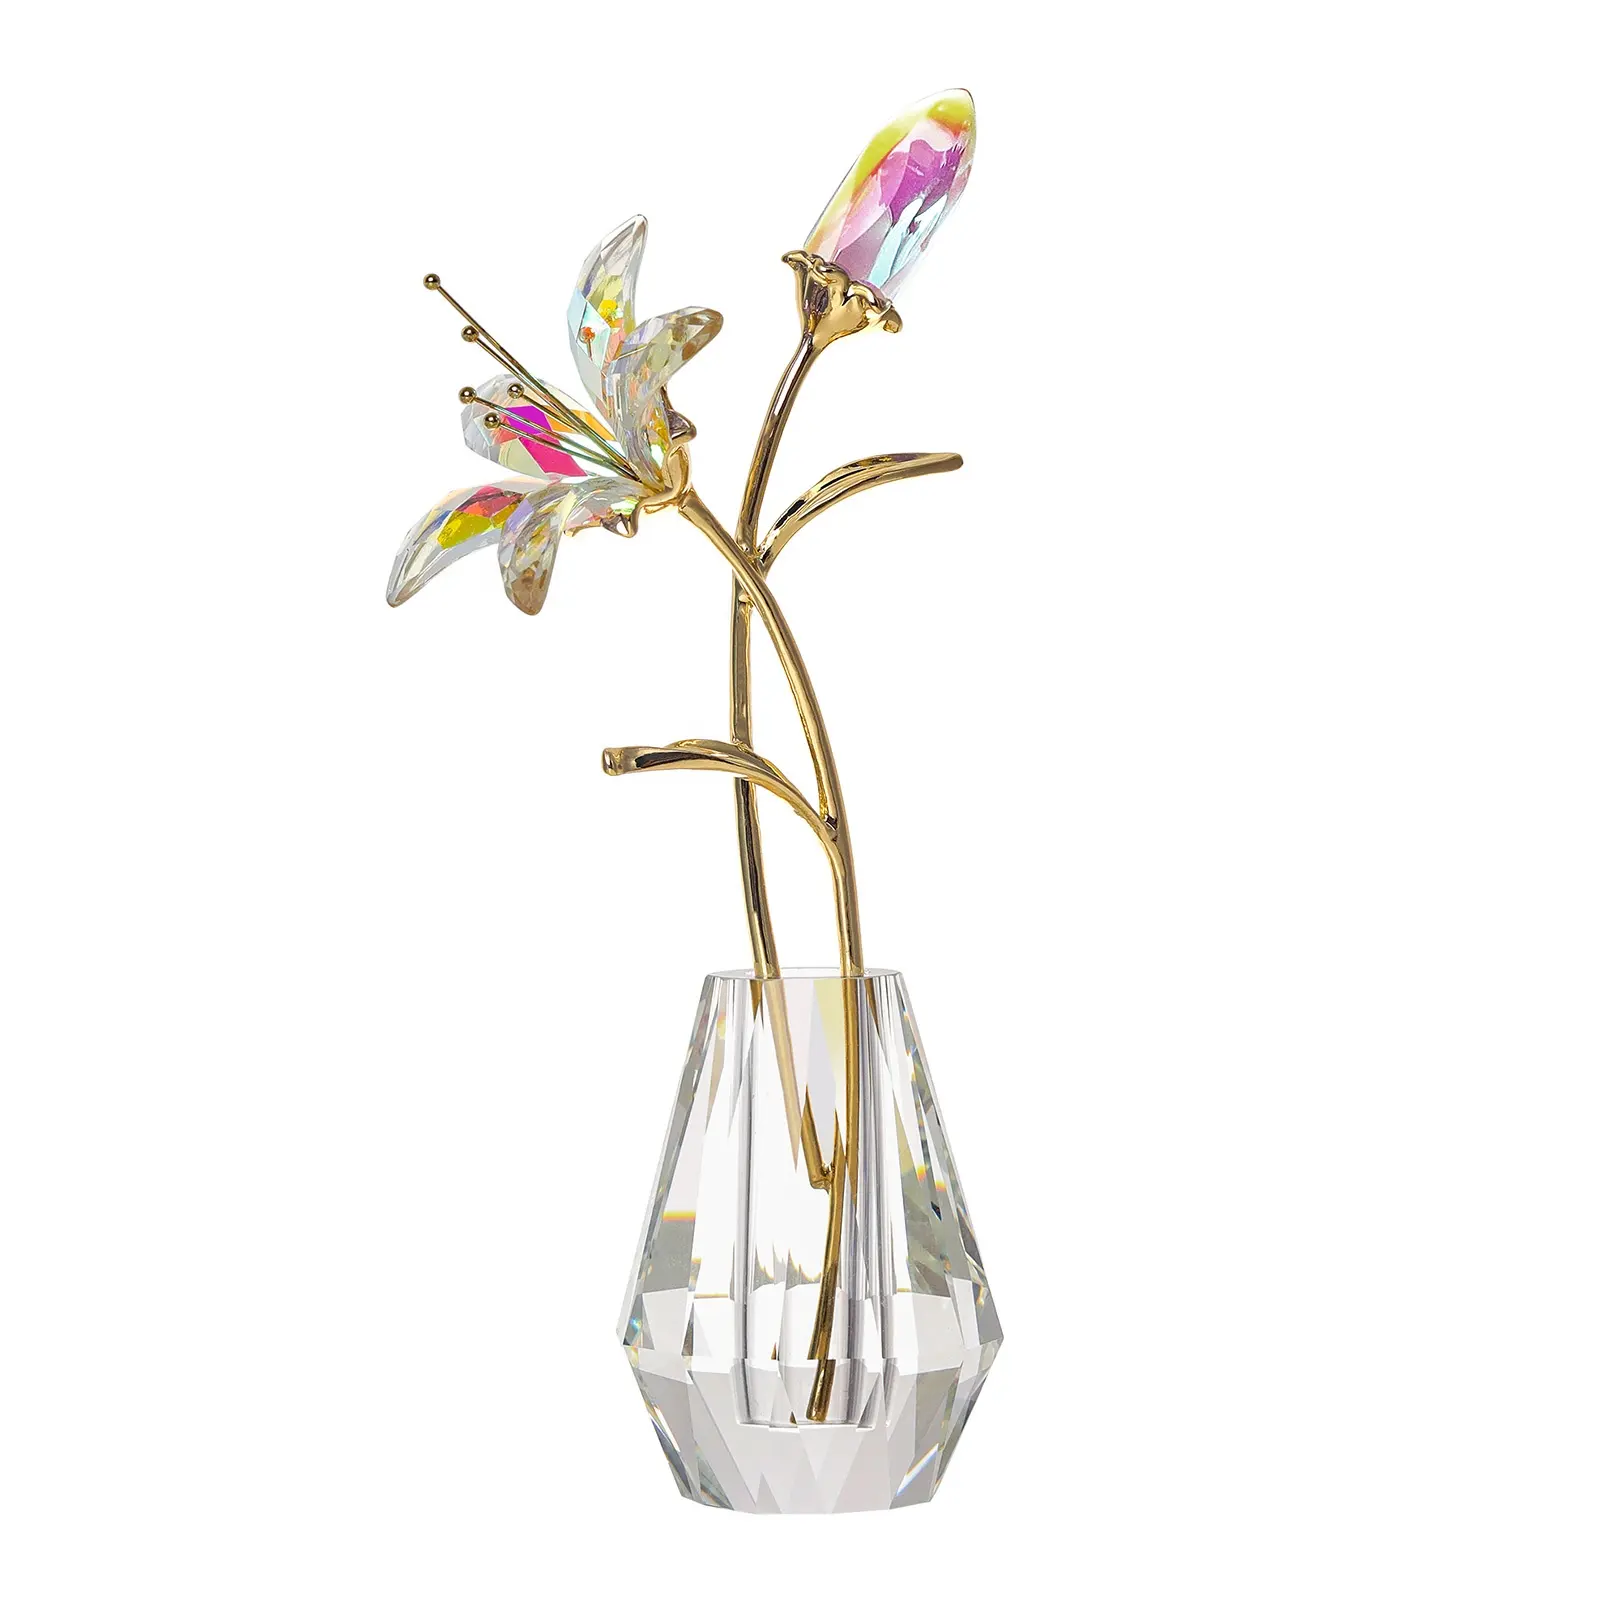 LONGWIN kristal yapay zambak çiçekler kristal vazo-AB kaplama kristal koleksiyon figürler hediye anneler günü için